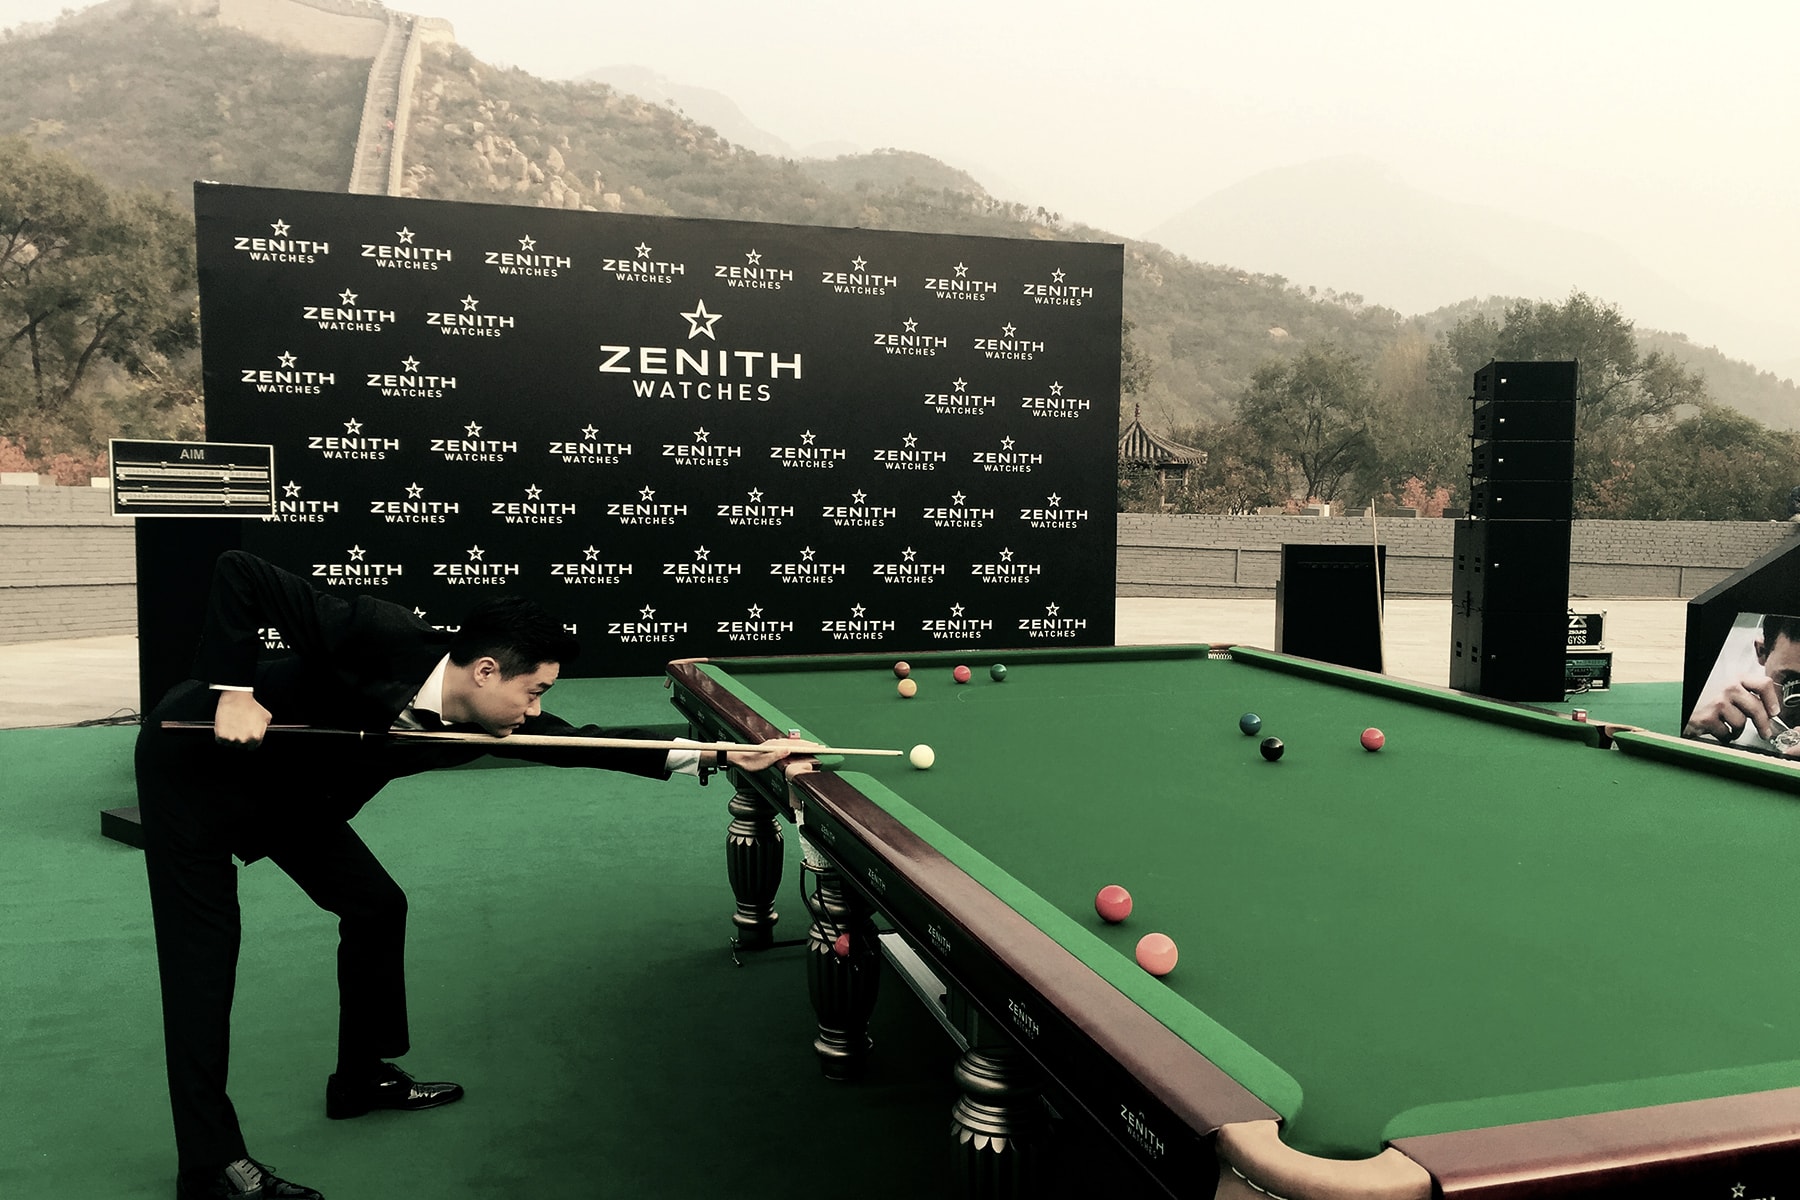 亞洲 Snooker 之王丁俊暉加盟 Zenith 成最新品牌大使